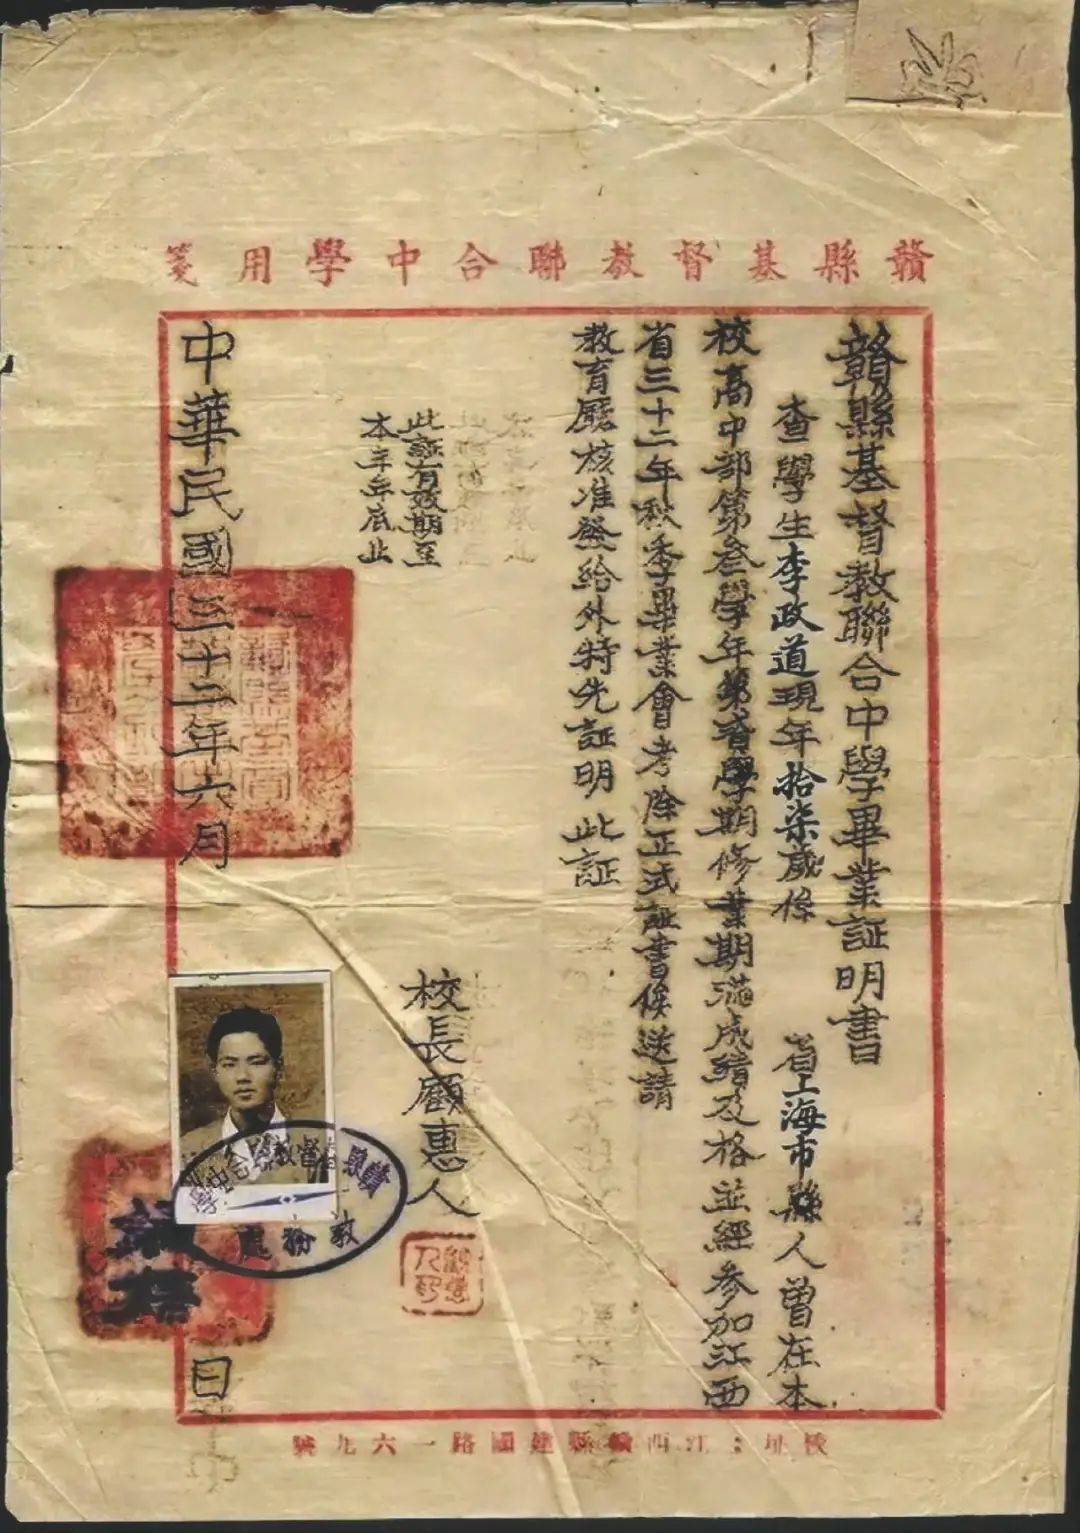 秀州中学老师向记者出示了他的毕业证书照片,毕业证书上面贴有李政道